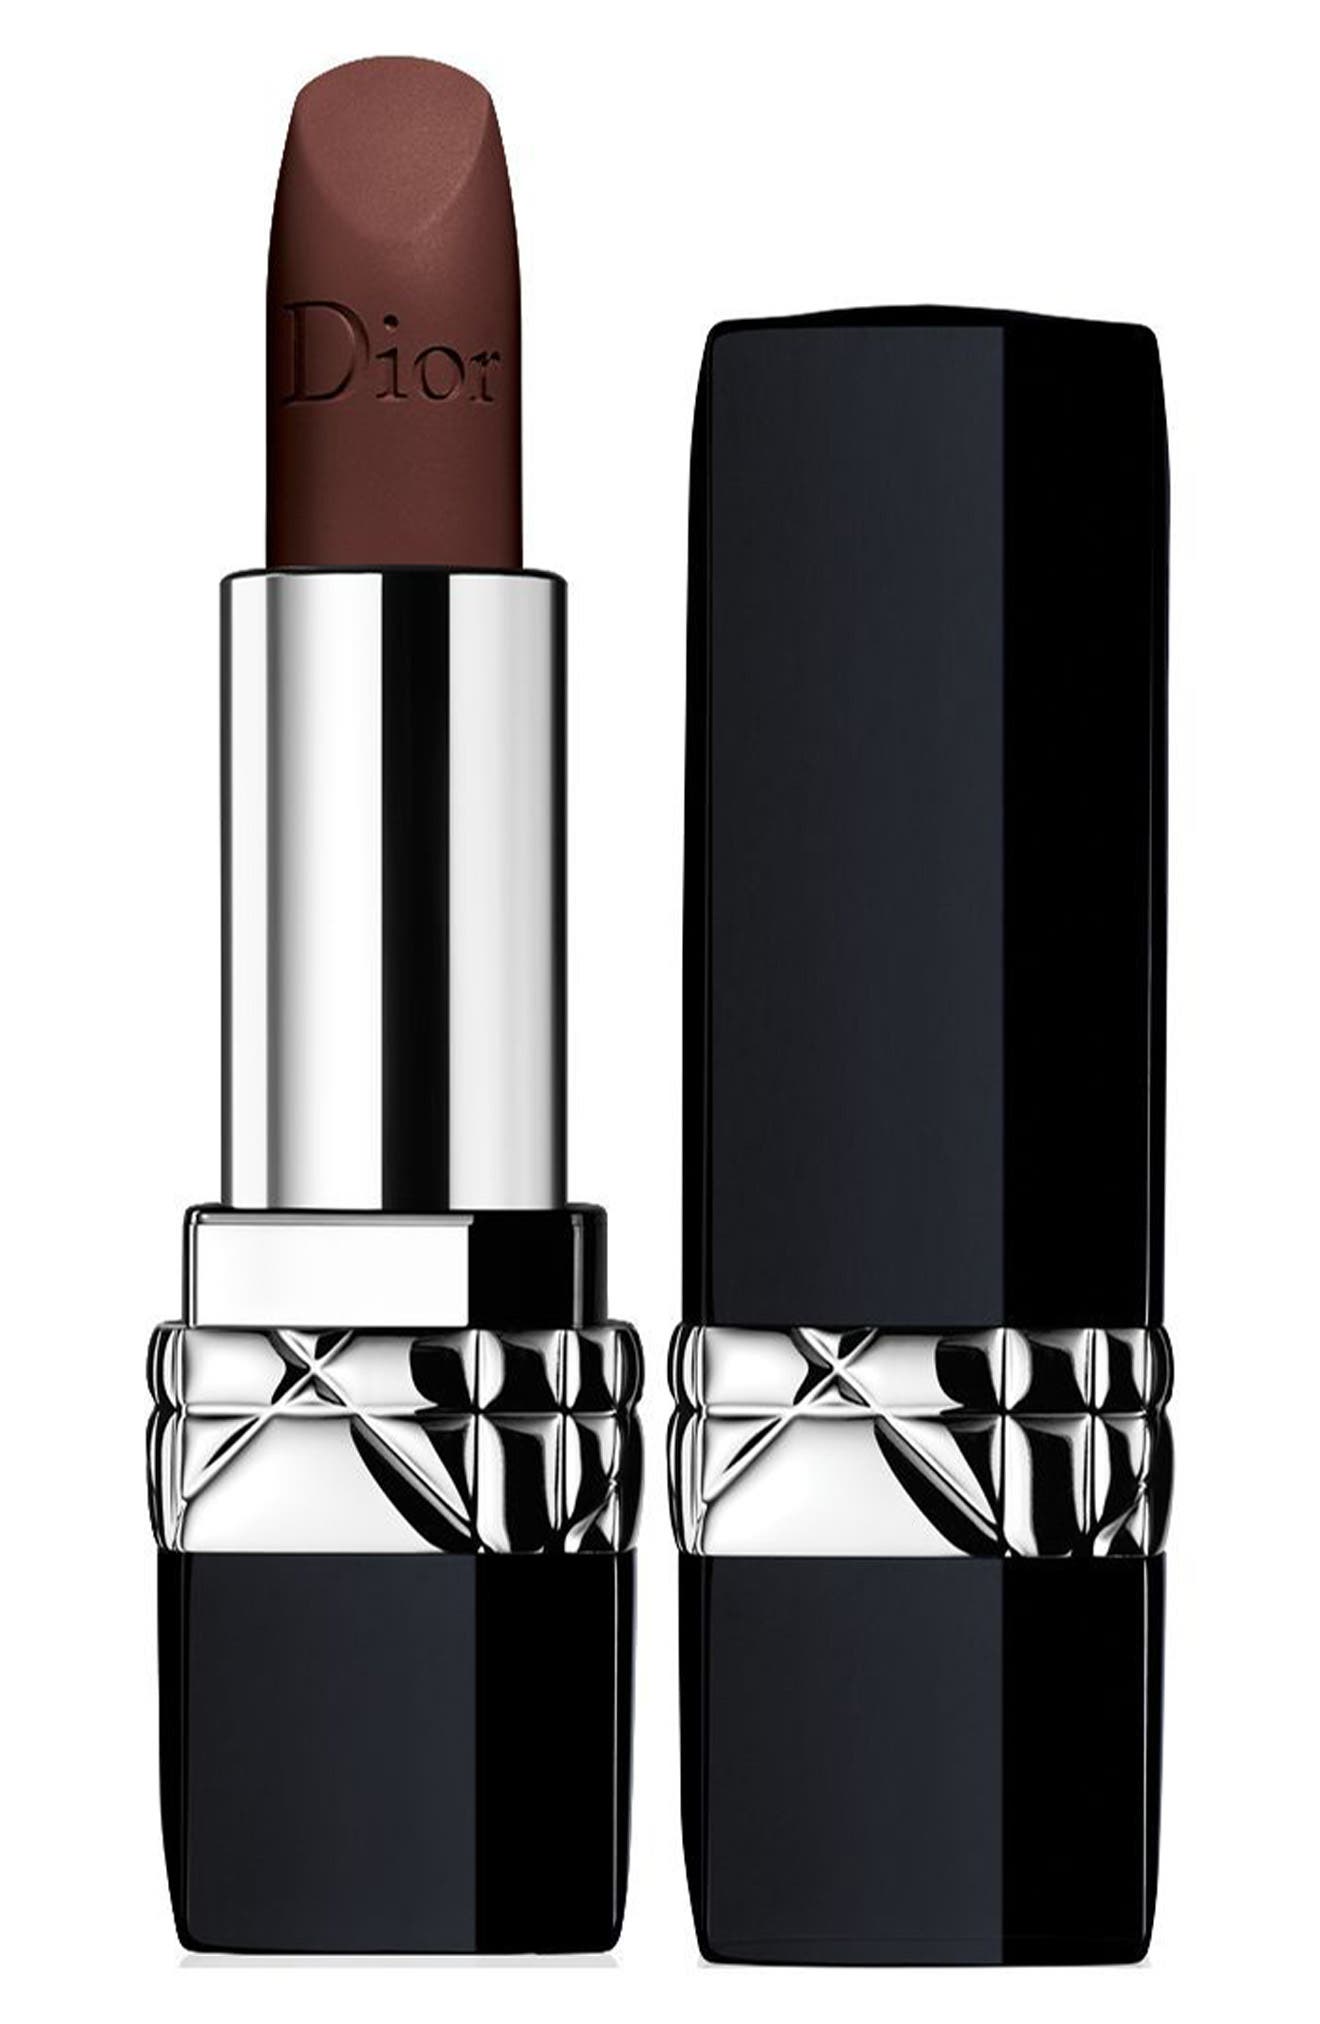 Dior Ombre Lipstick In 990 Chocolate 